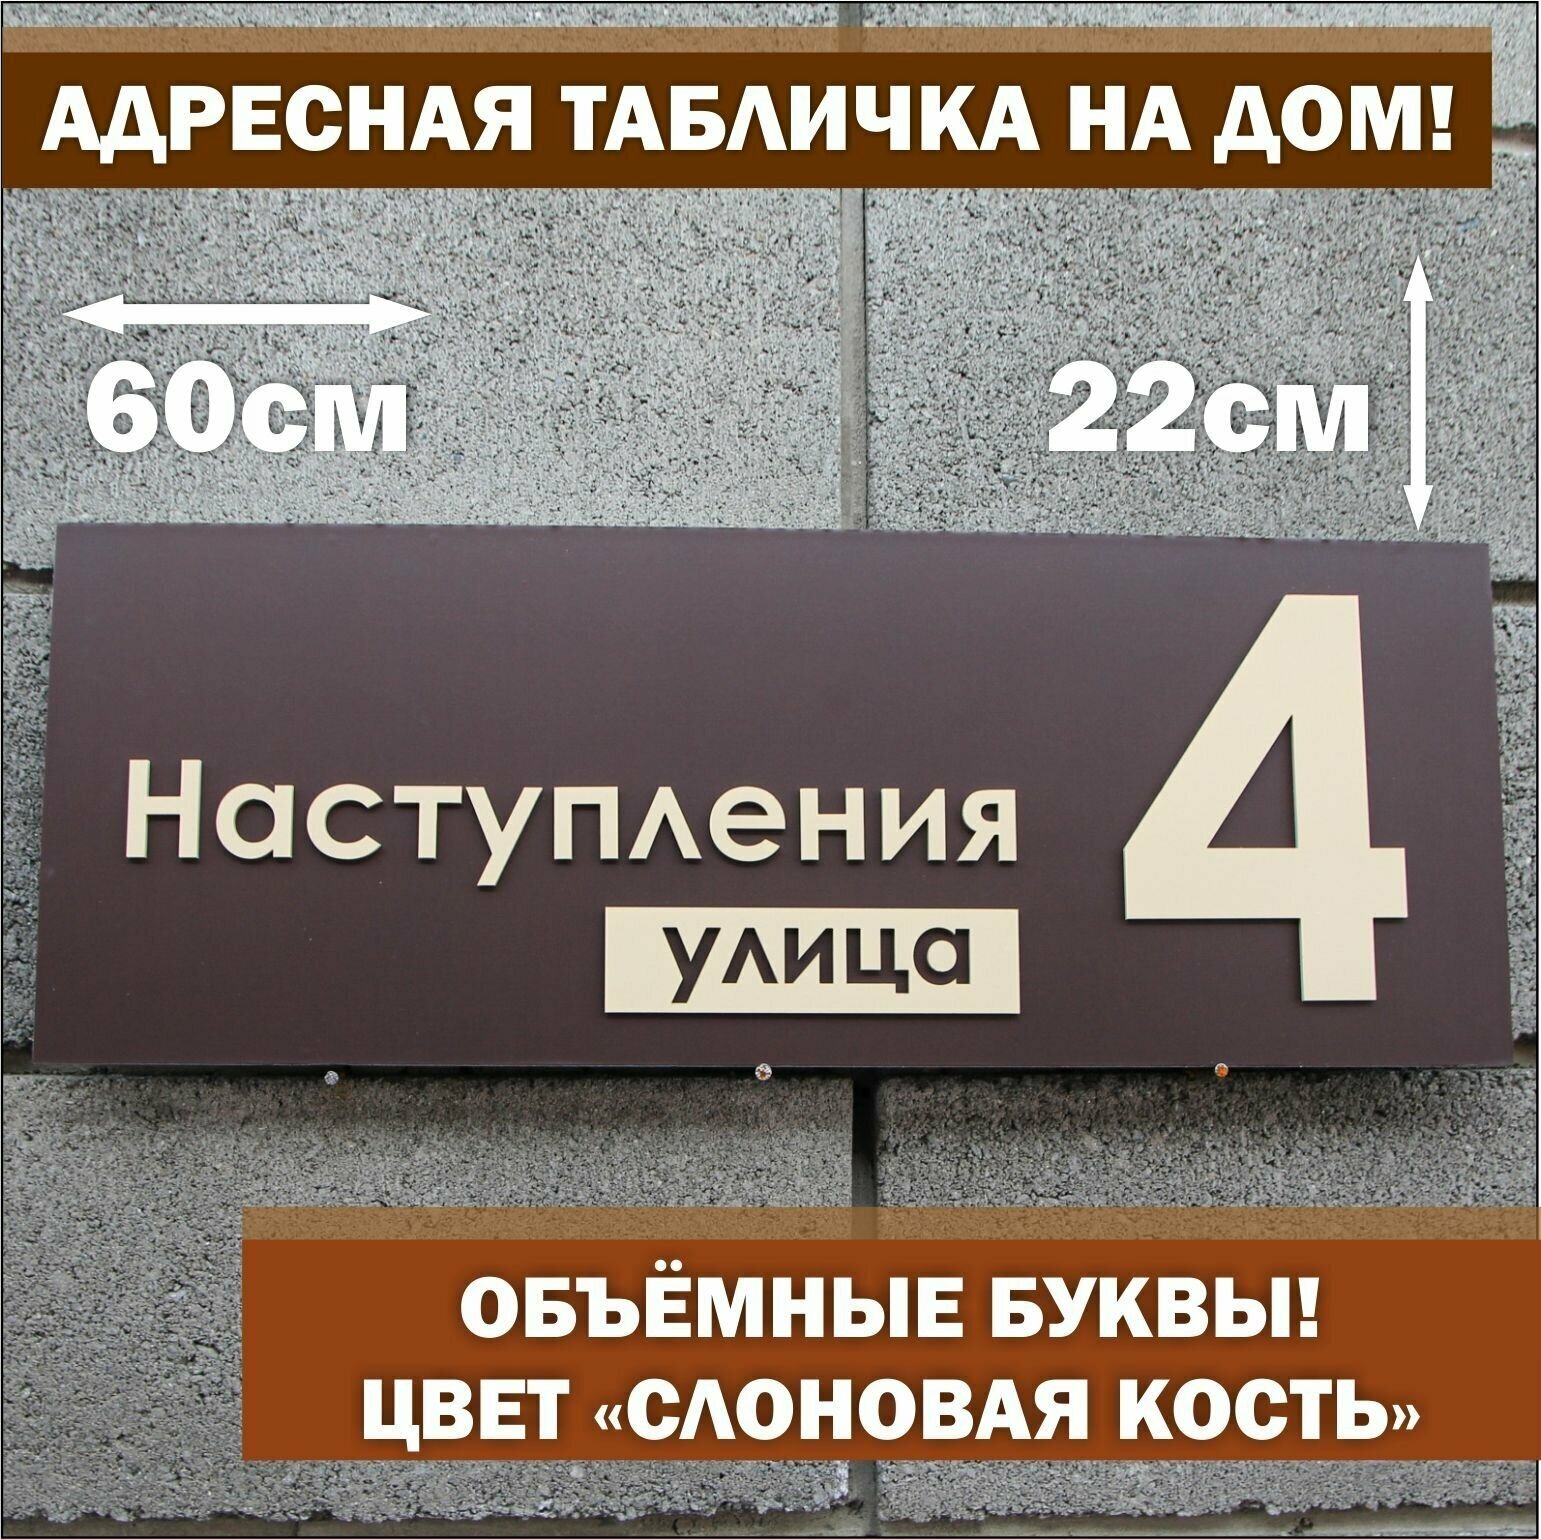 Адресная табличка на дом с объёмными буквами (слоновая кость), Happy Tree, коричневая 60х22см, для улицы